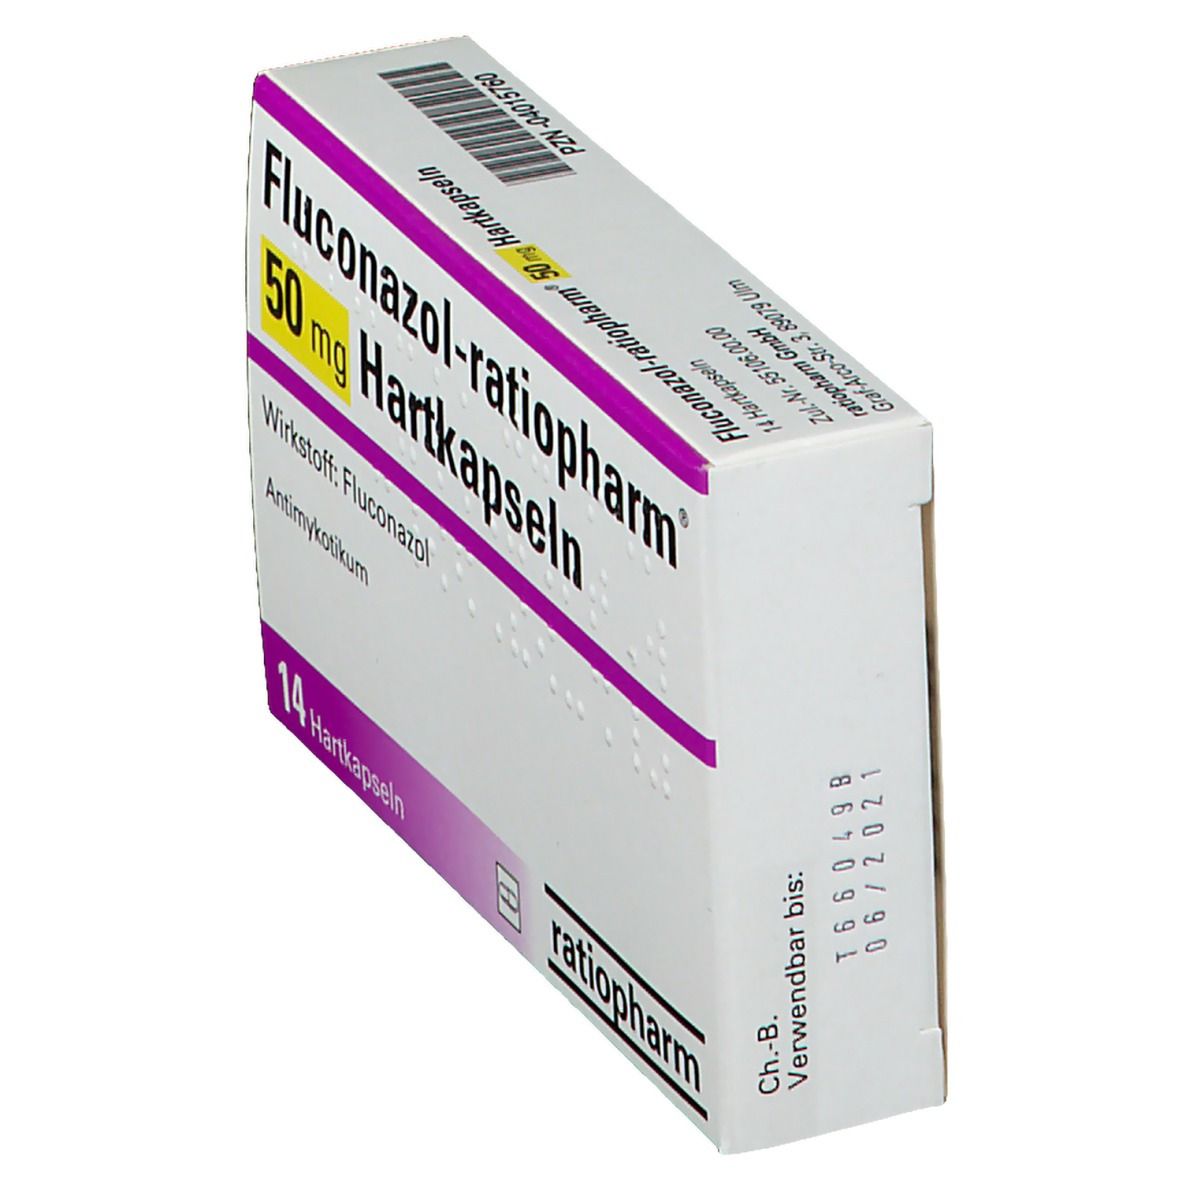 Fluconazol-ratiopharm® 50 mg